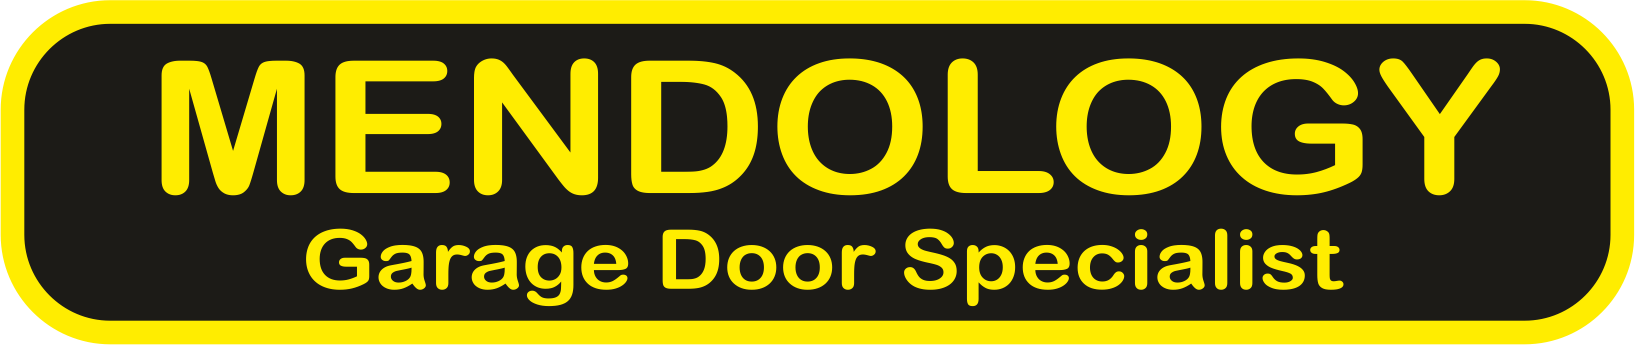 mendology garage doors logo